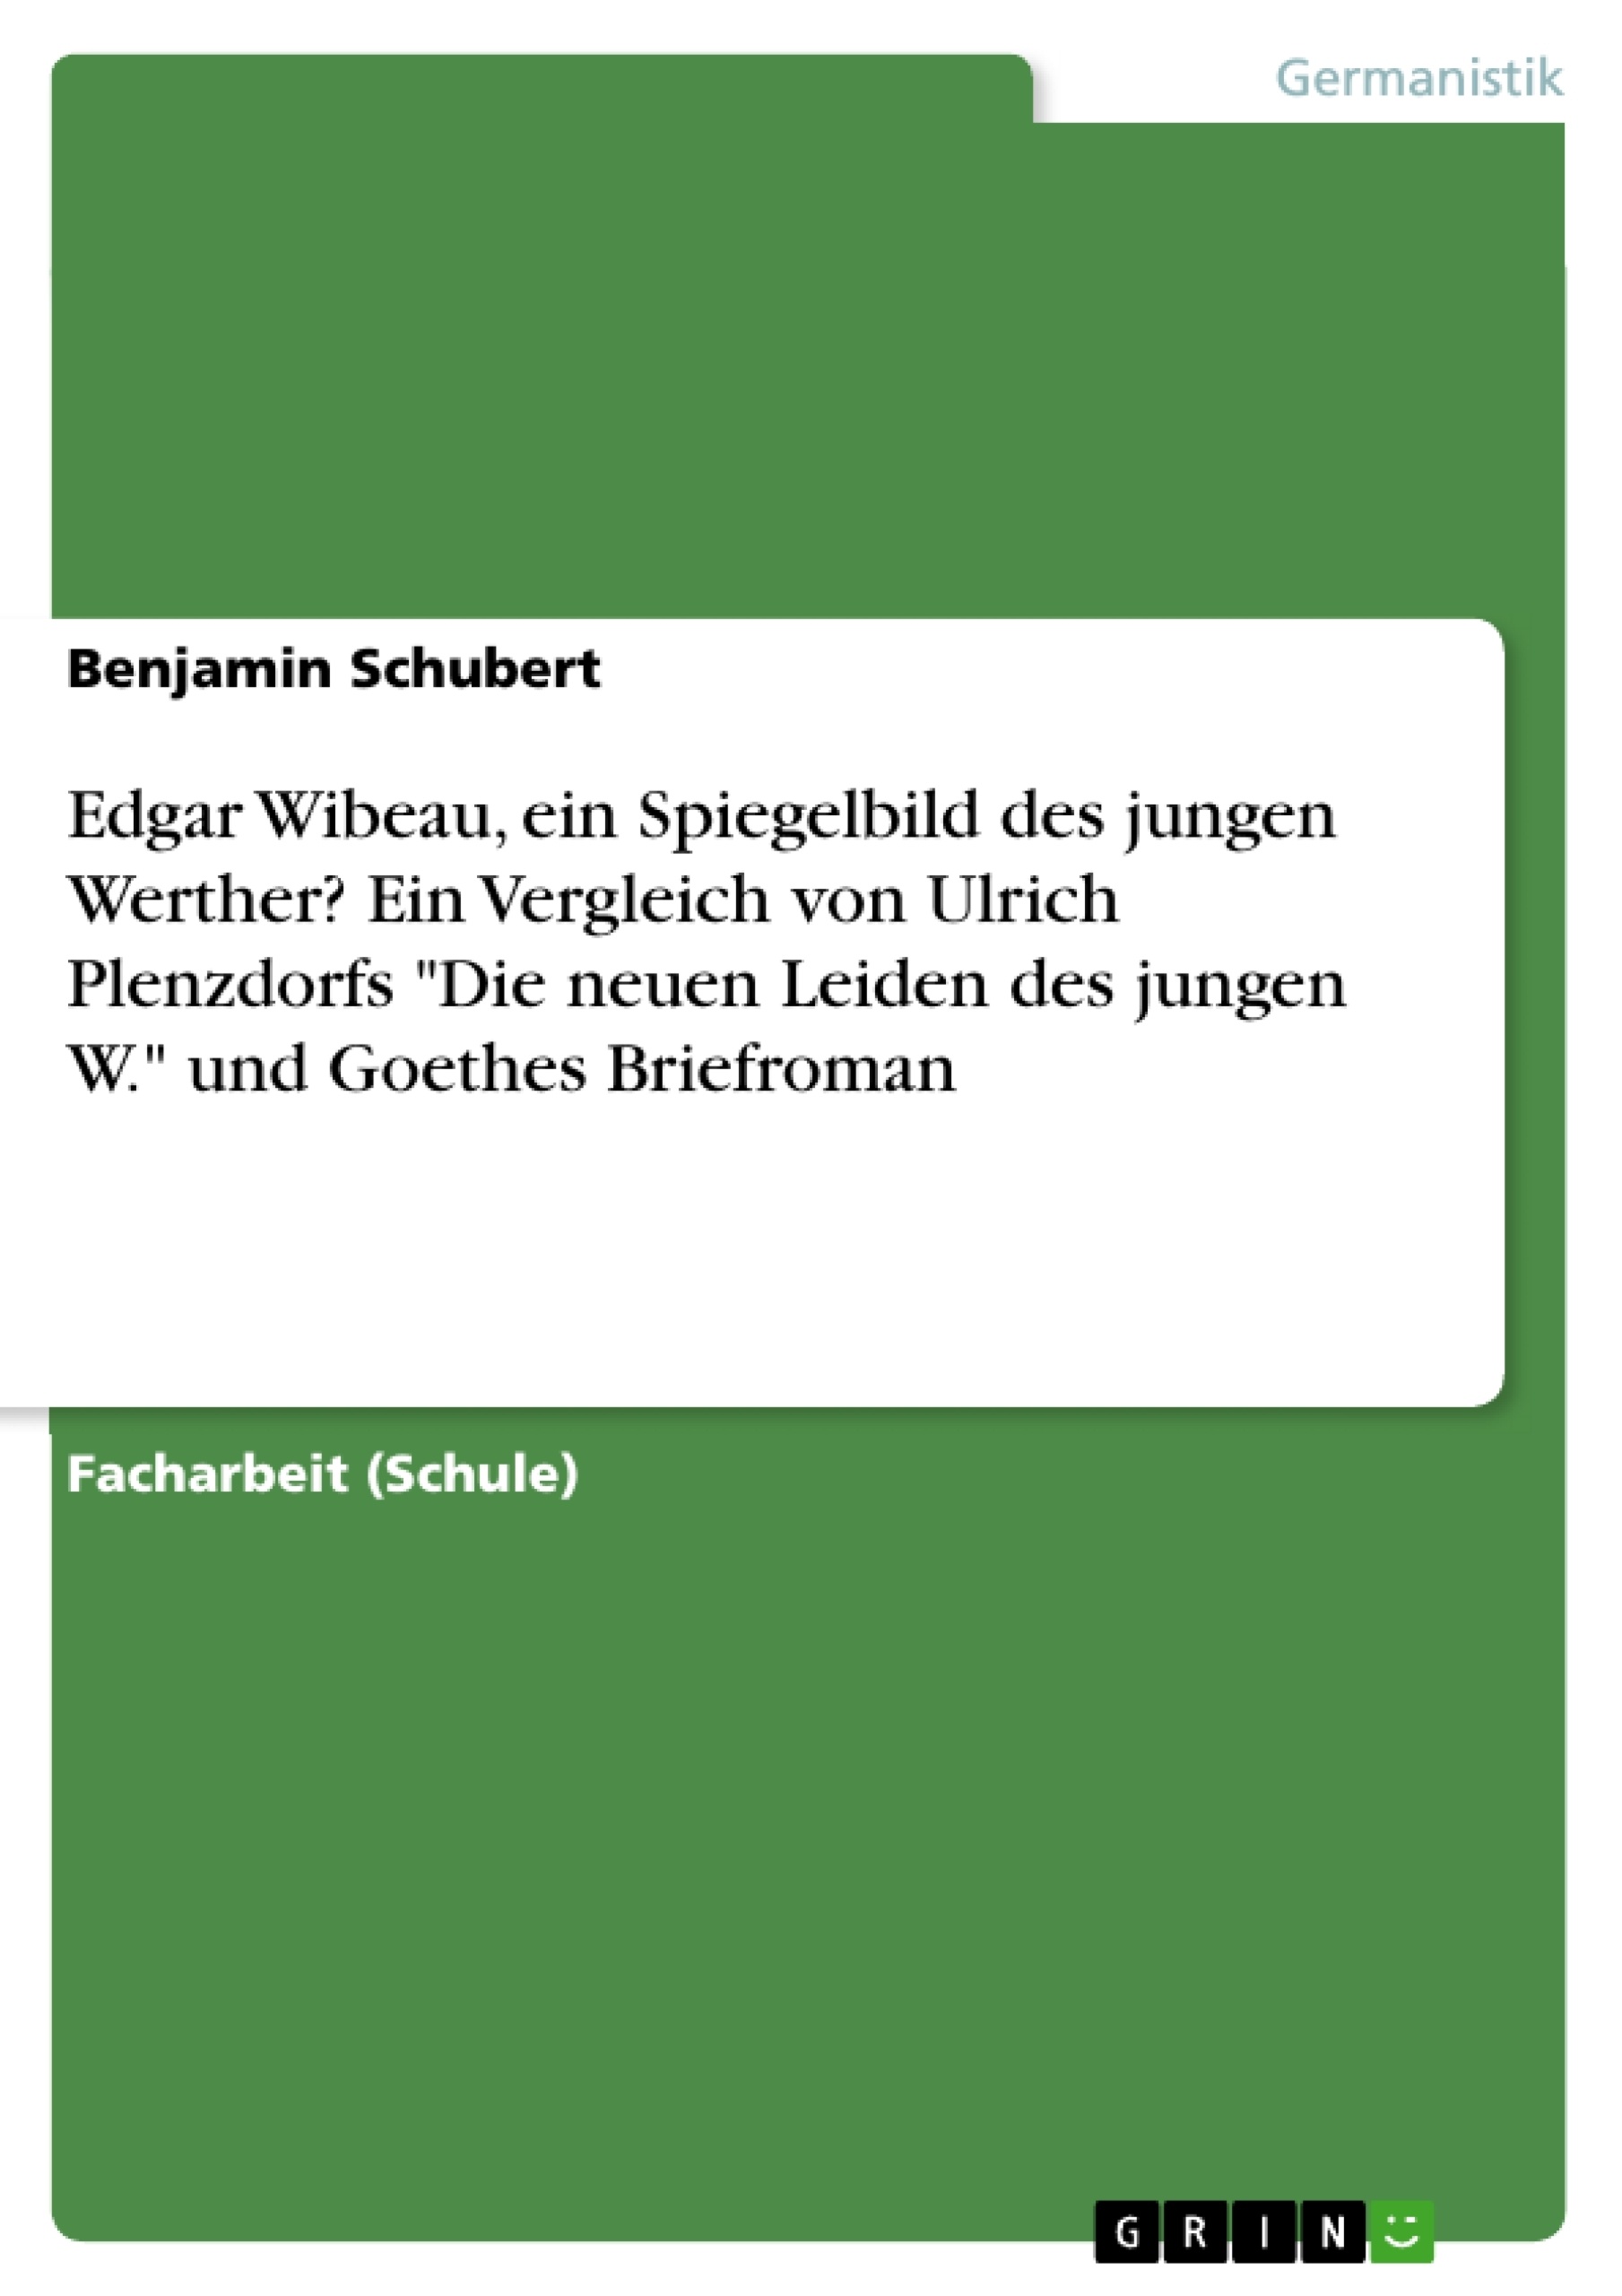 Title: Edgar Wibeau, ein Spiegelbild des jungen Werther? Ein Vergleich von Ulrich Plenzdorfs "Die neuen Leiden des jungen W." und Goethes Briefroman